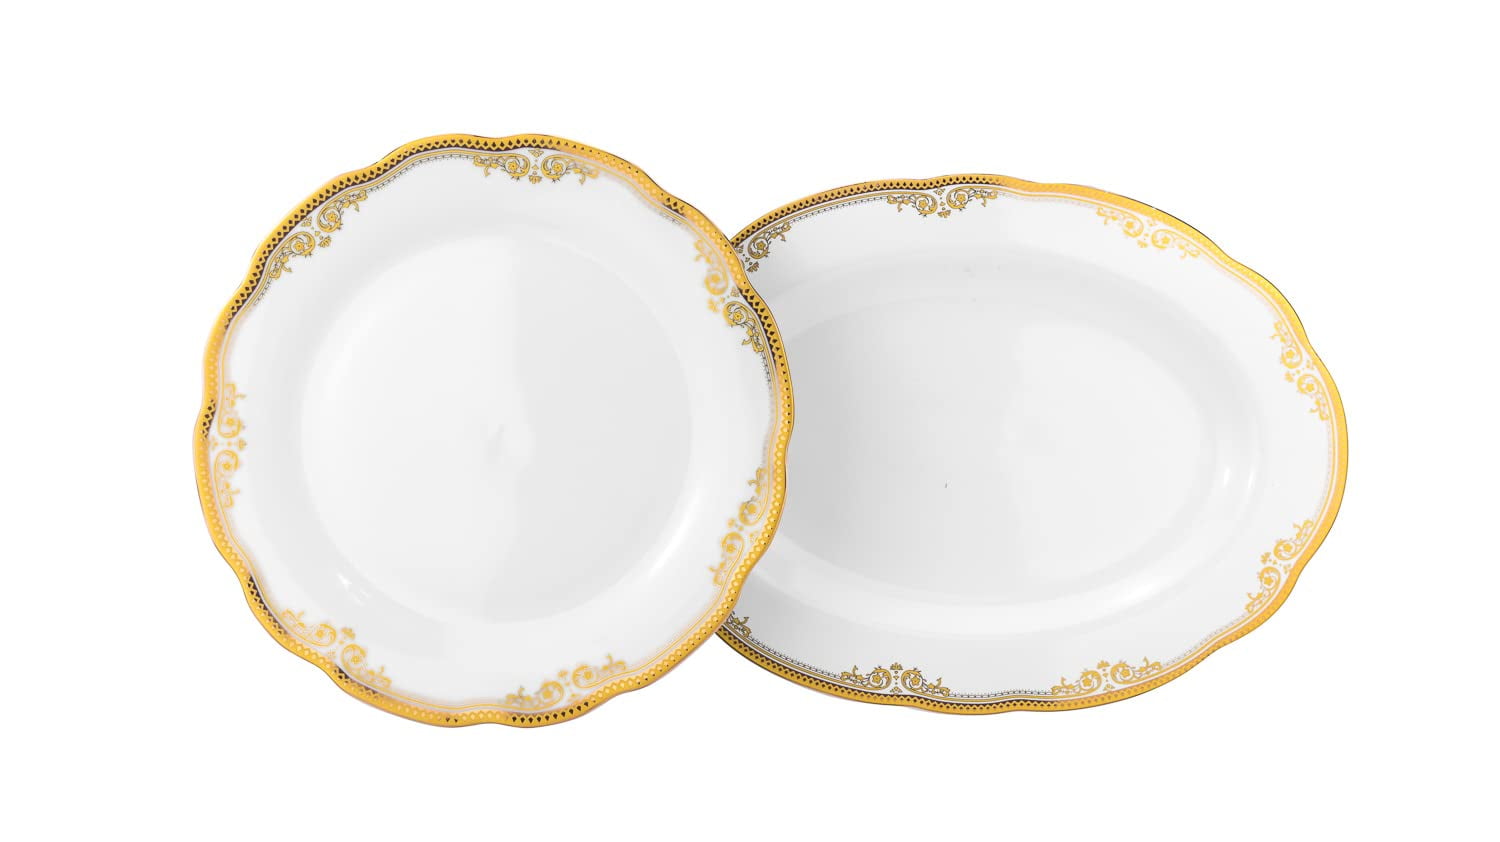 Buy M07022 Luxury Fine Porcelain Royal Dinnerware,porcelain